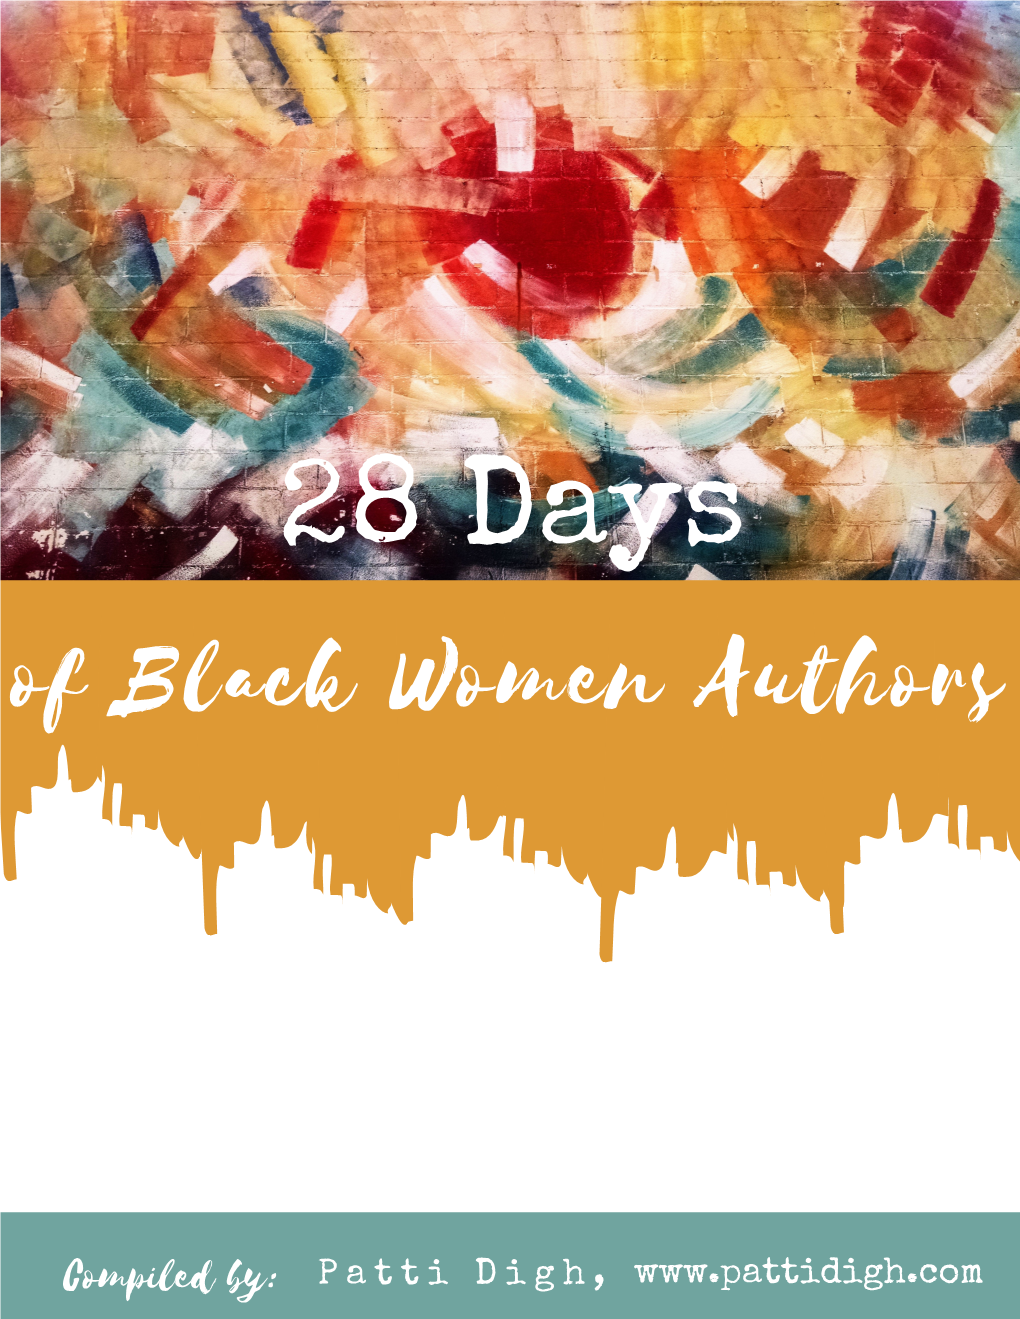 Of Black Women Authors